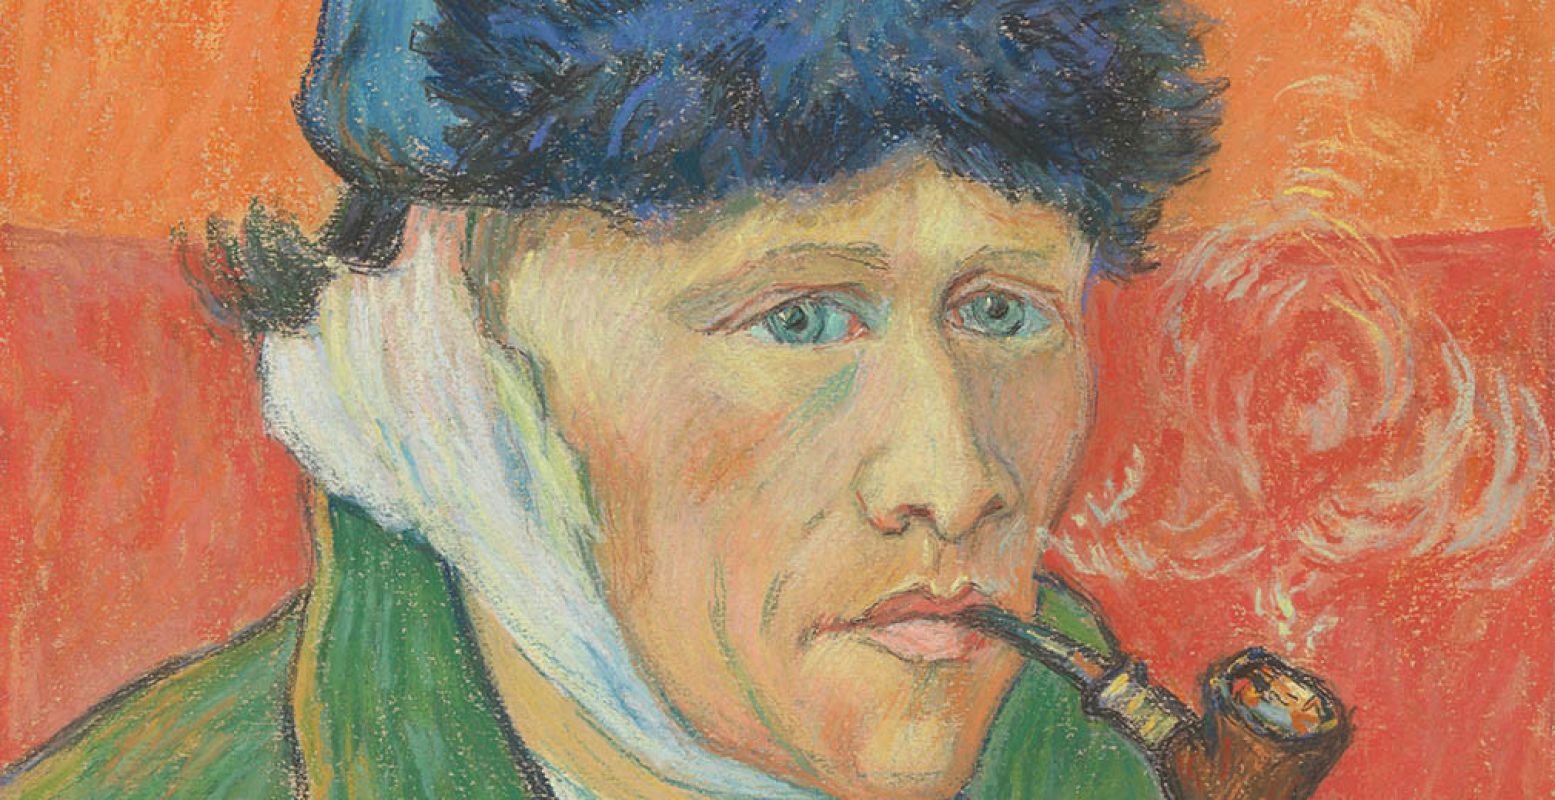 Emile Schuffenecker, Man met pijp (naar Van Goghs Zelfportret), ca. 1892-1900, krijt op papier, Van Gogh Museum, Amsterdam (Vincent van Gogh Stichting)